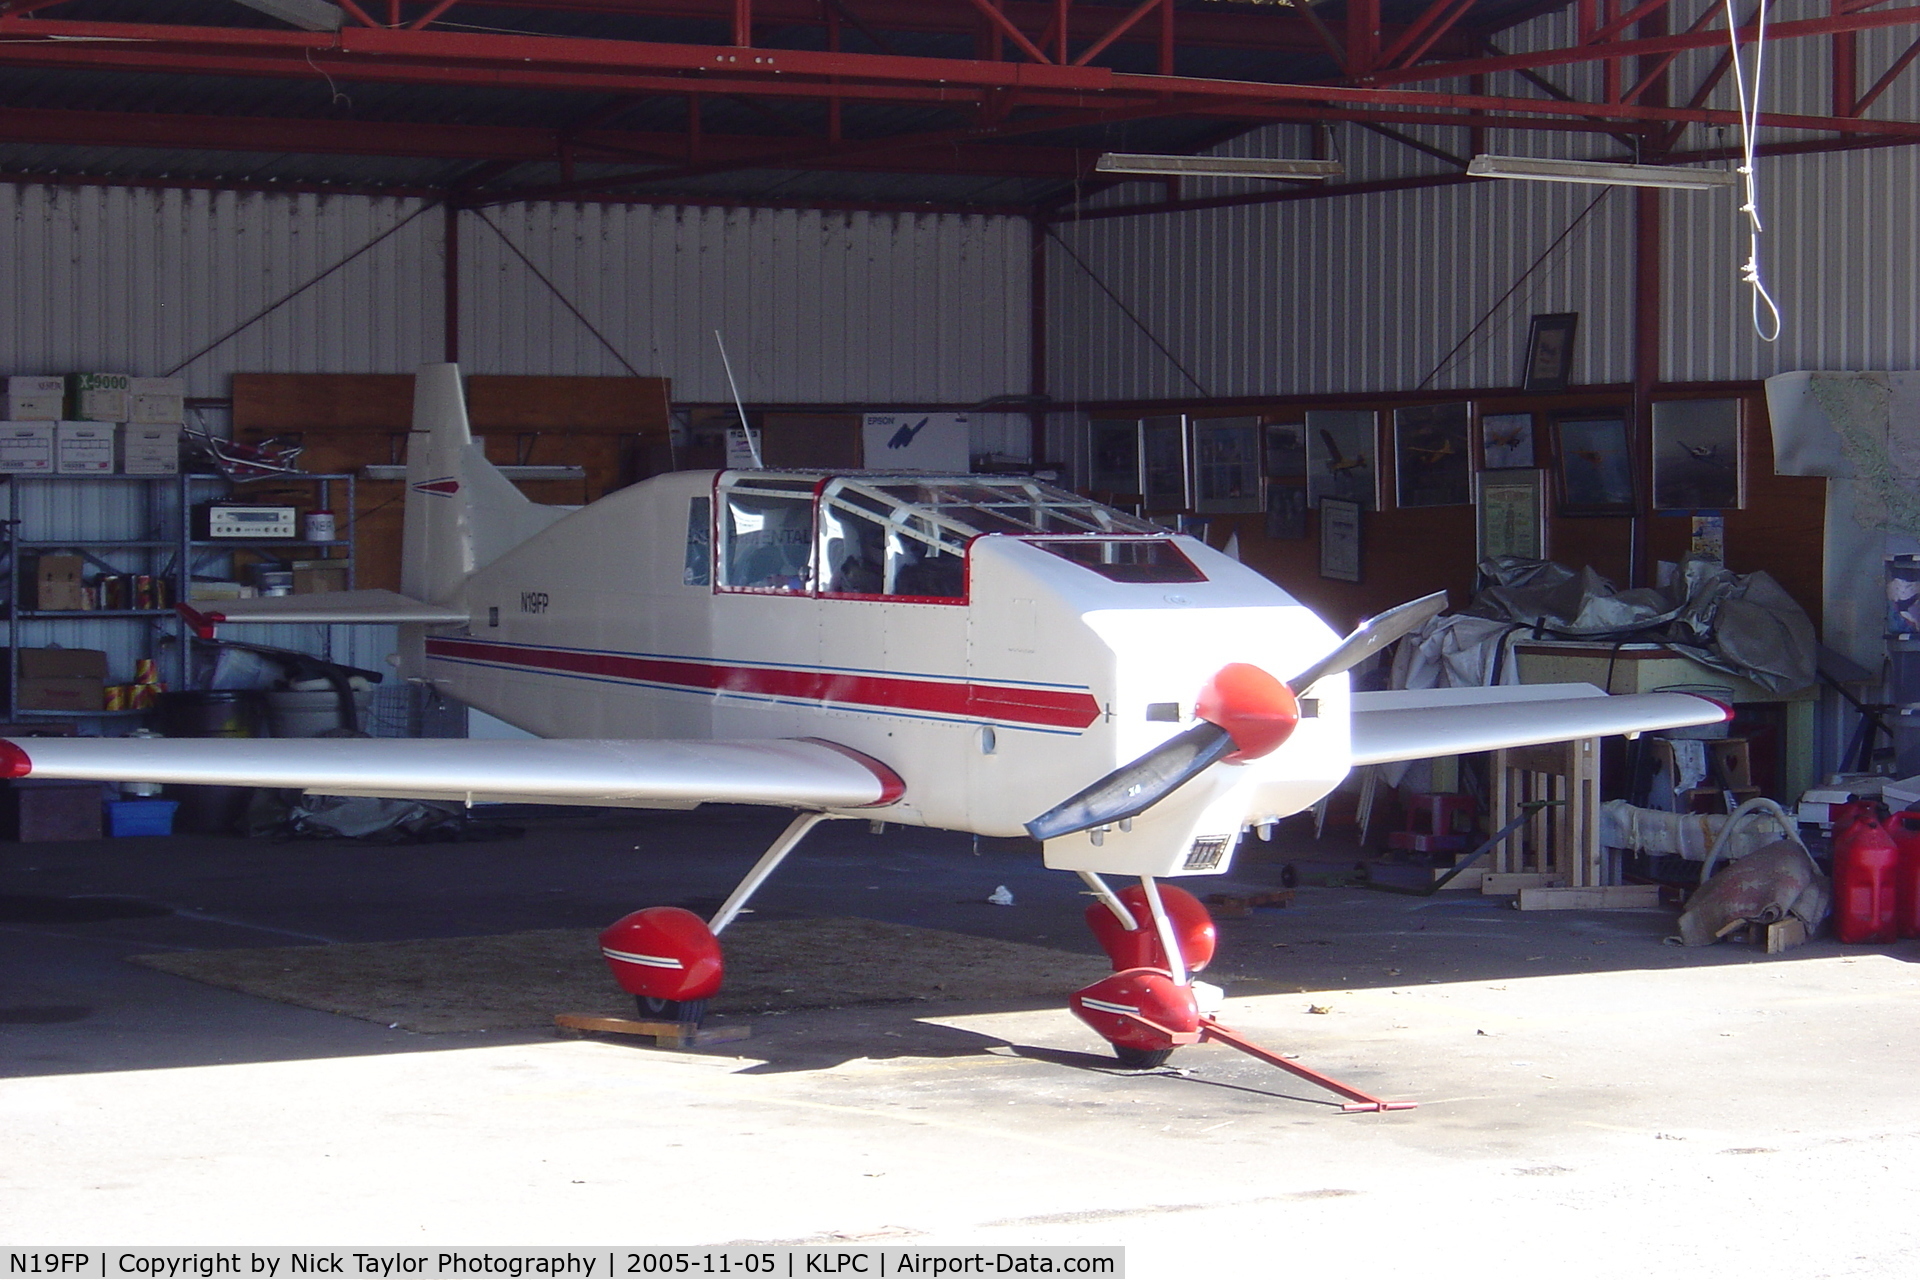 N19FP, 2003 Rand Camber-1 C/N 1, In the hangar